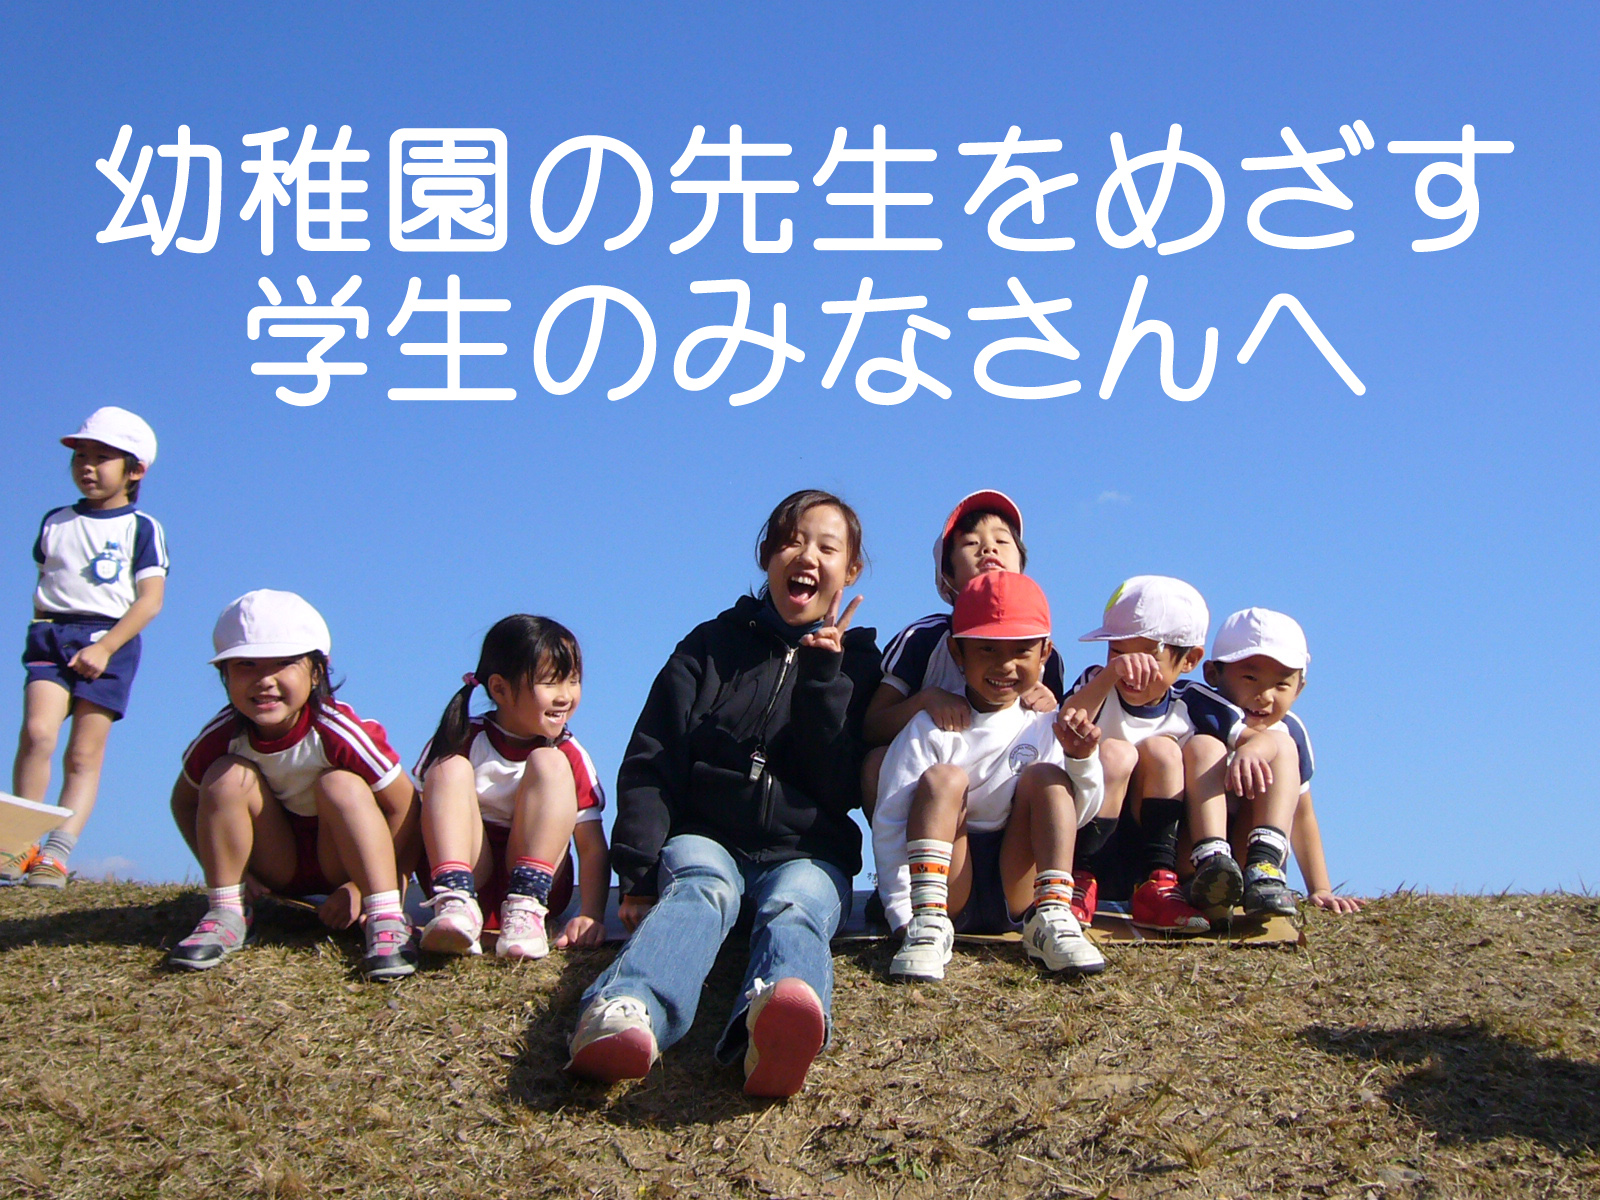 先生の求人について 京都 学校法人 嵐山学園 さくら幼稚園 健康で明るく 元気な子になあれ